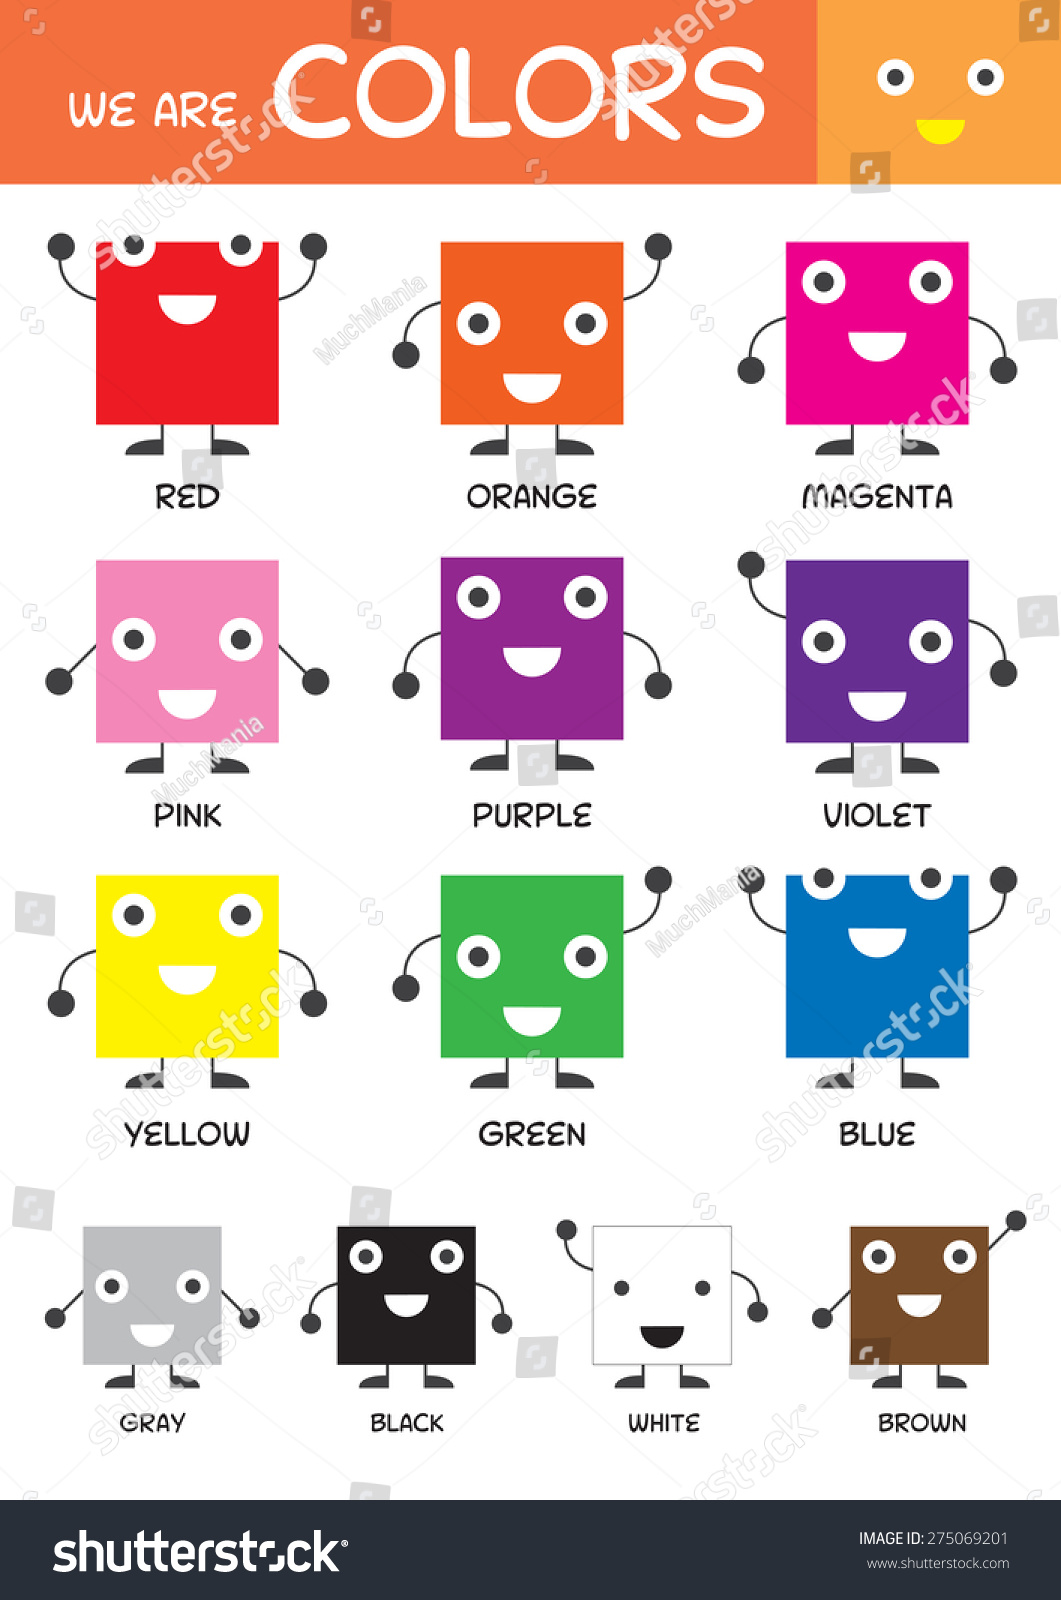 voorstel Uitgaand Bakken Kids Basic Colors Chart Kindergarten Preschool Stock Vector (Royalty Free)  275069201